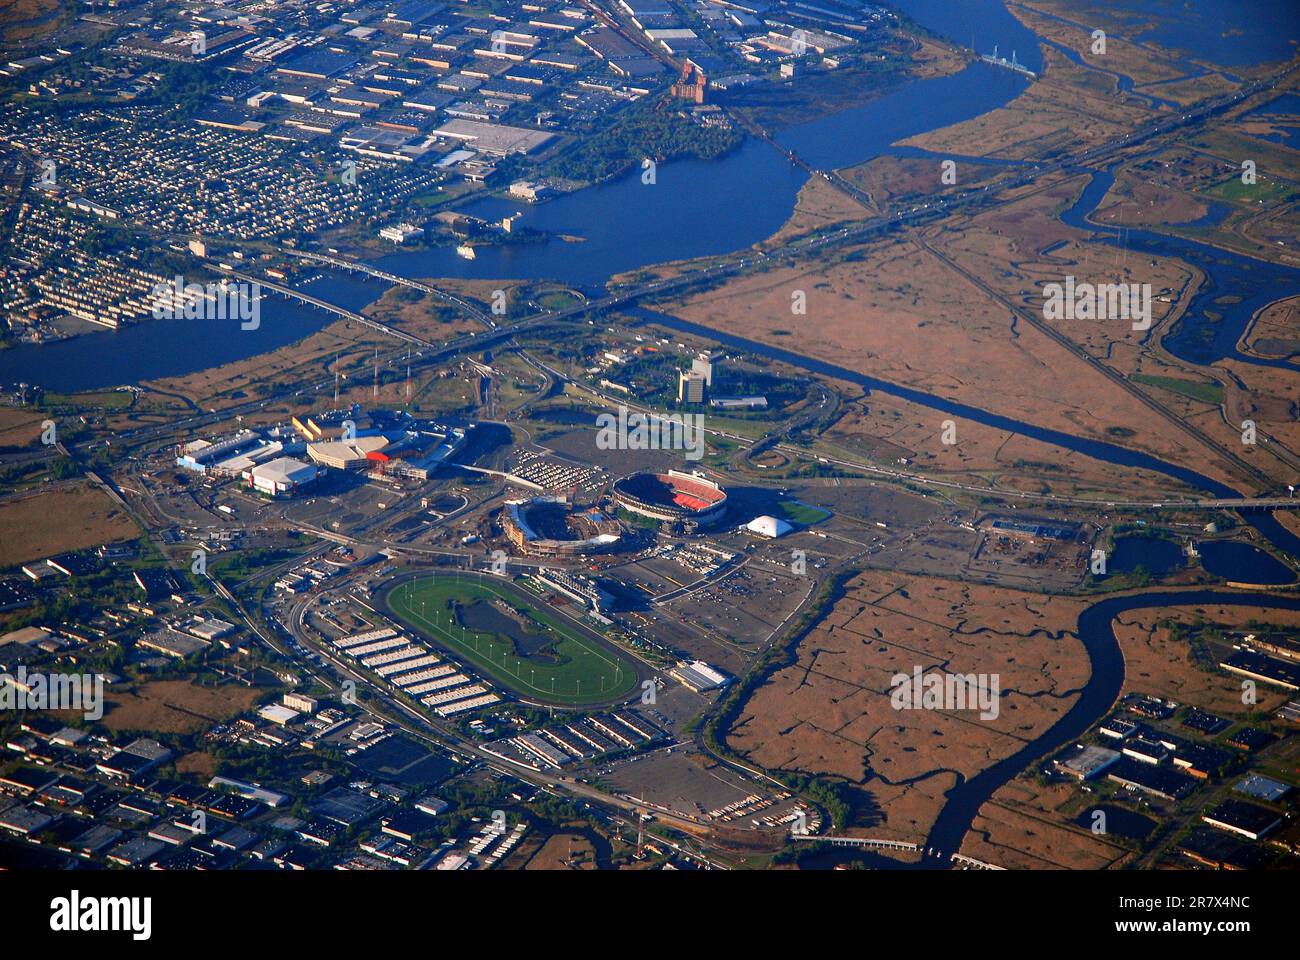 Une vue aérienne du complexe sportif Meadowlands dans le New Jersey, y compris le stade Giants, MetLife Statdium pour le football et la piste de courses hippiques Banque D'Images